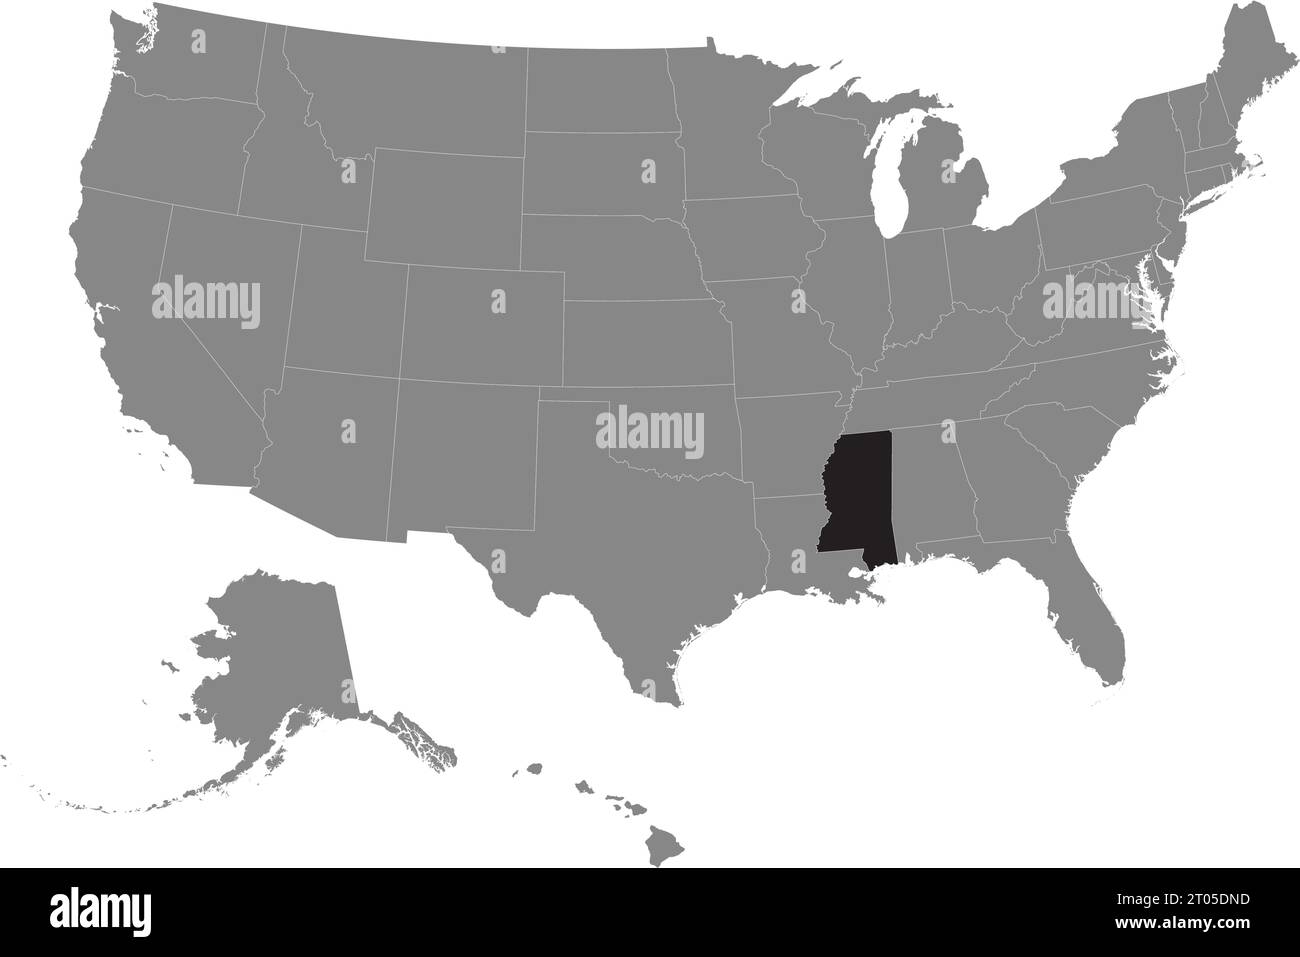 Schwarze CMYK-Bundeskarte von MISSISSIPPI in detaillierter grauer, leerer politischer Karte der Vereinigten Staaten von Amerika auf transparentem Hintergrund Stock Vektor